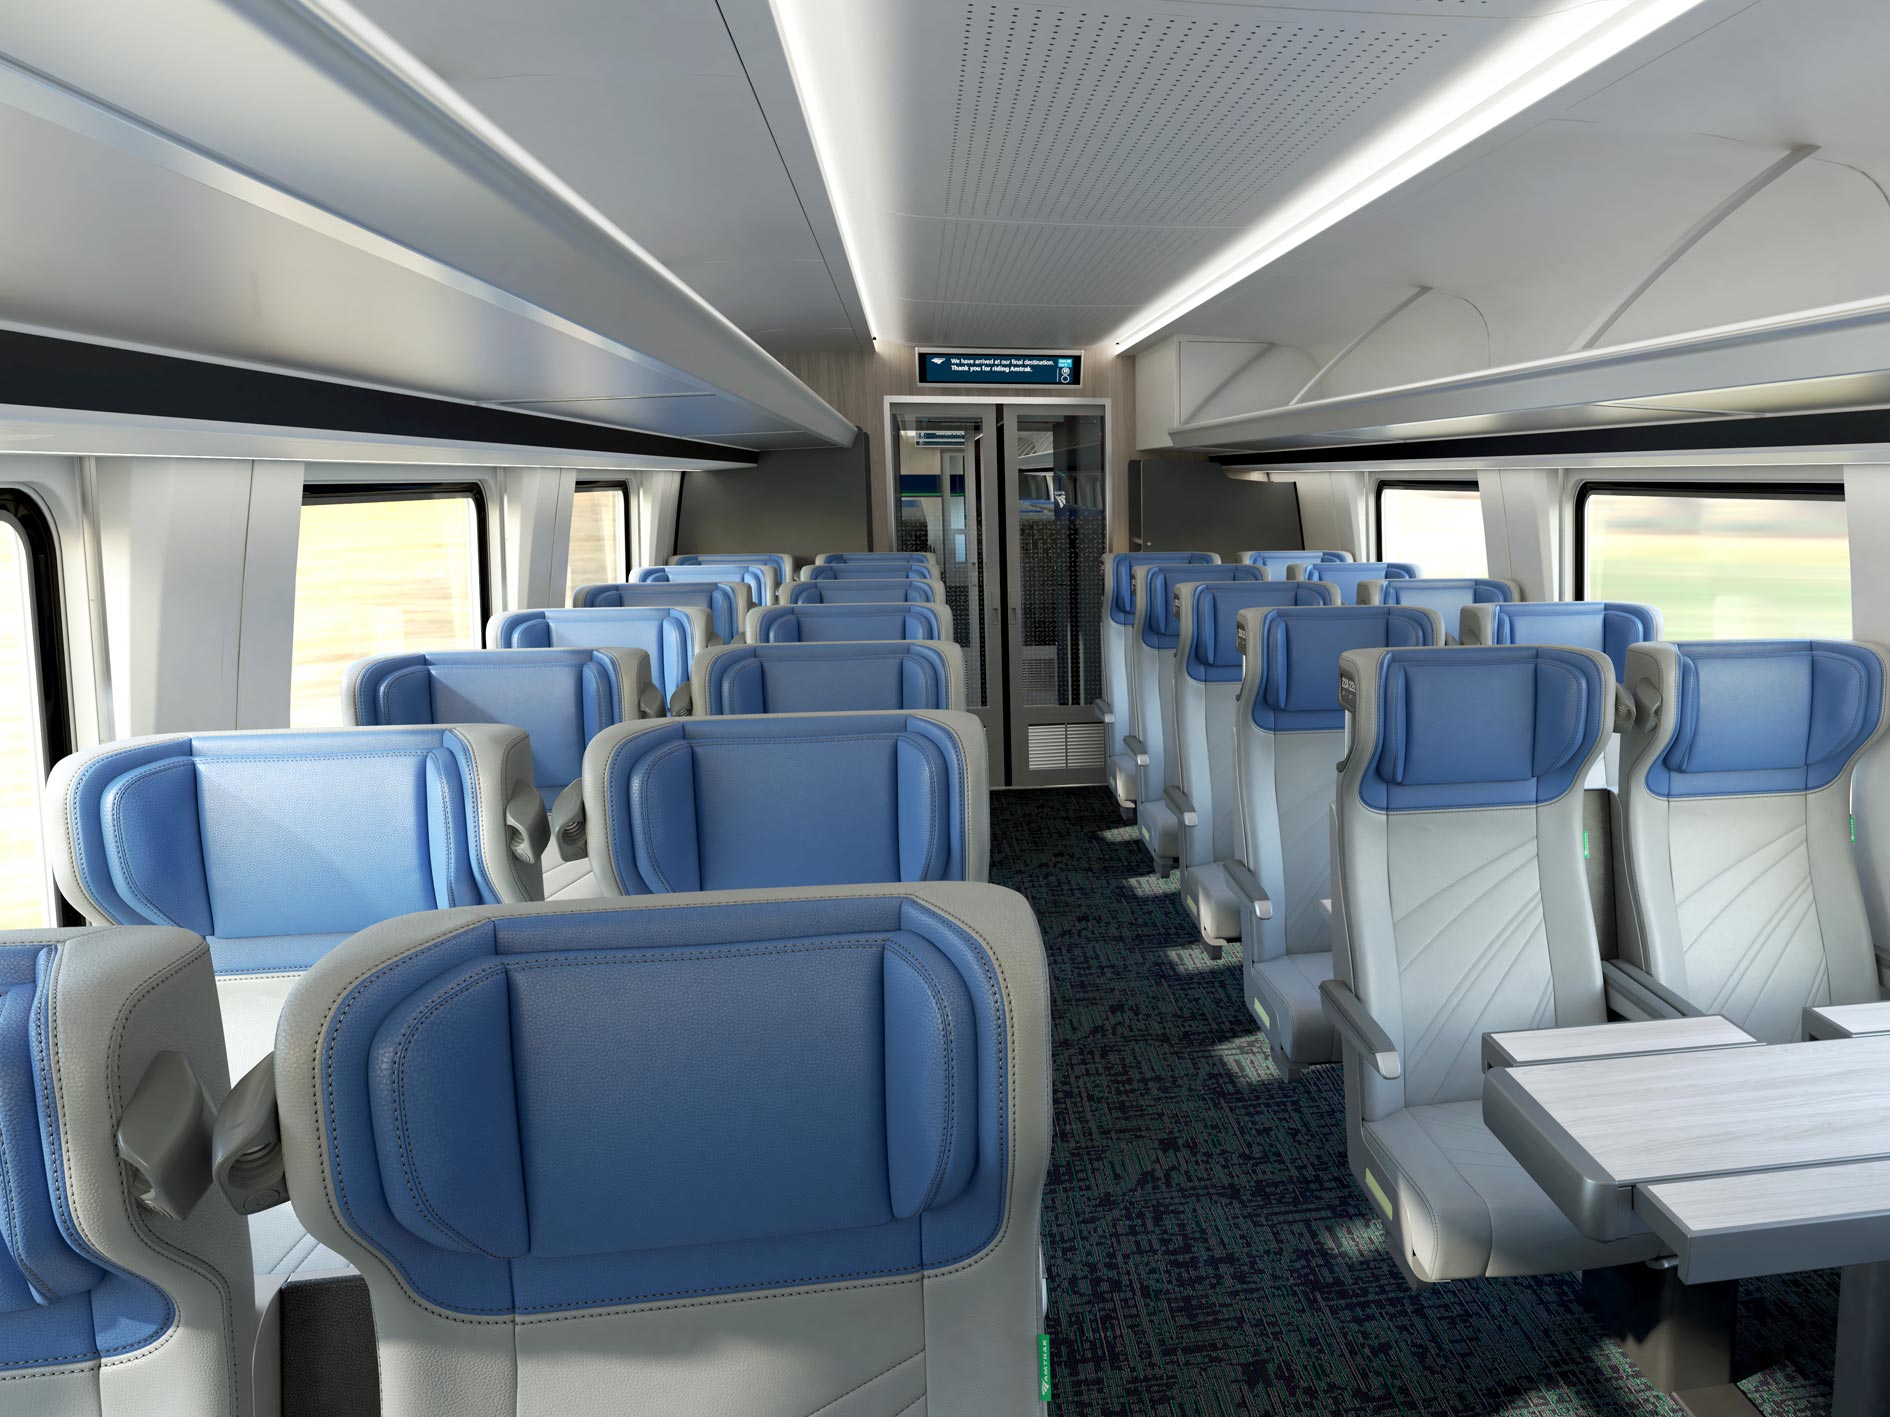 Meer comfort en voorzieningen in de nieuwe Amtrak Airo treinen